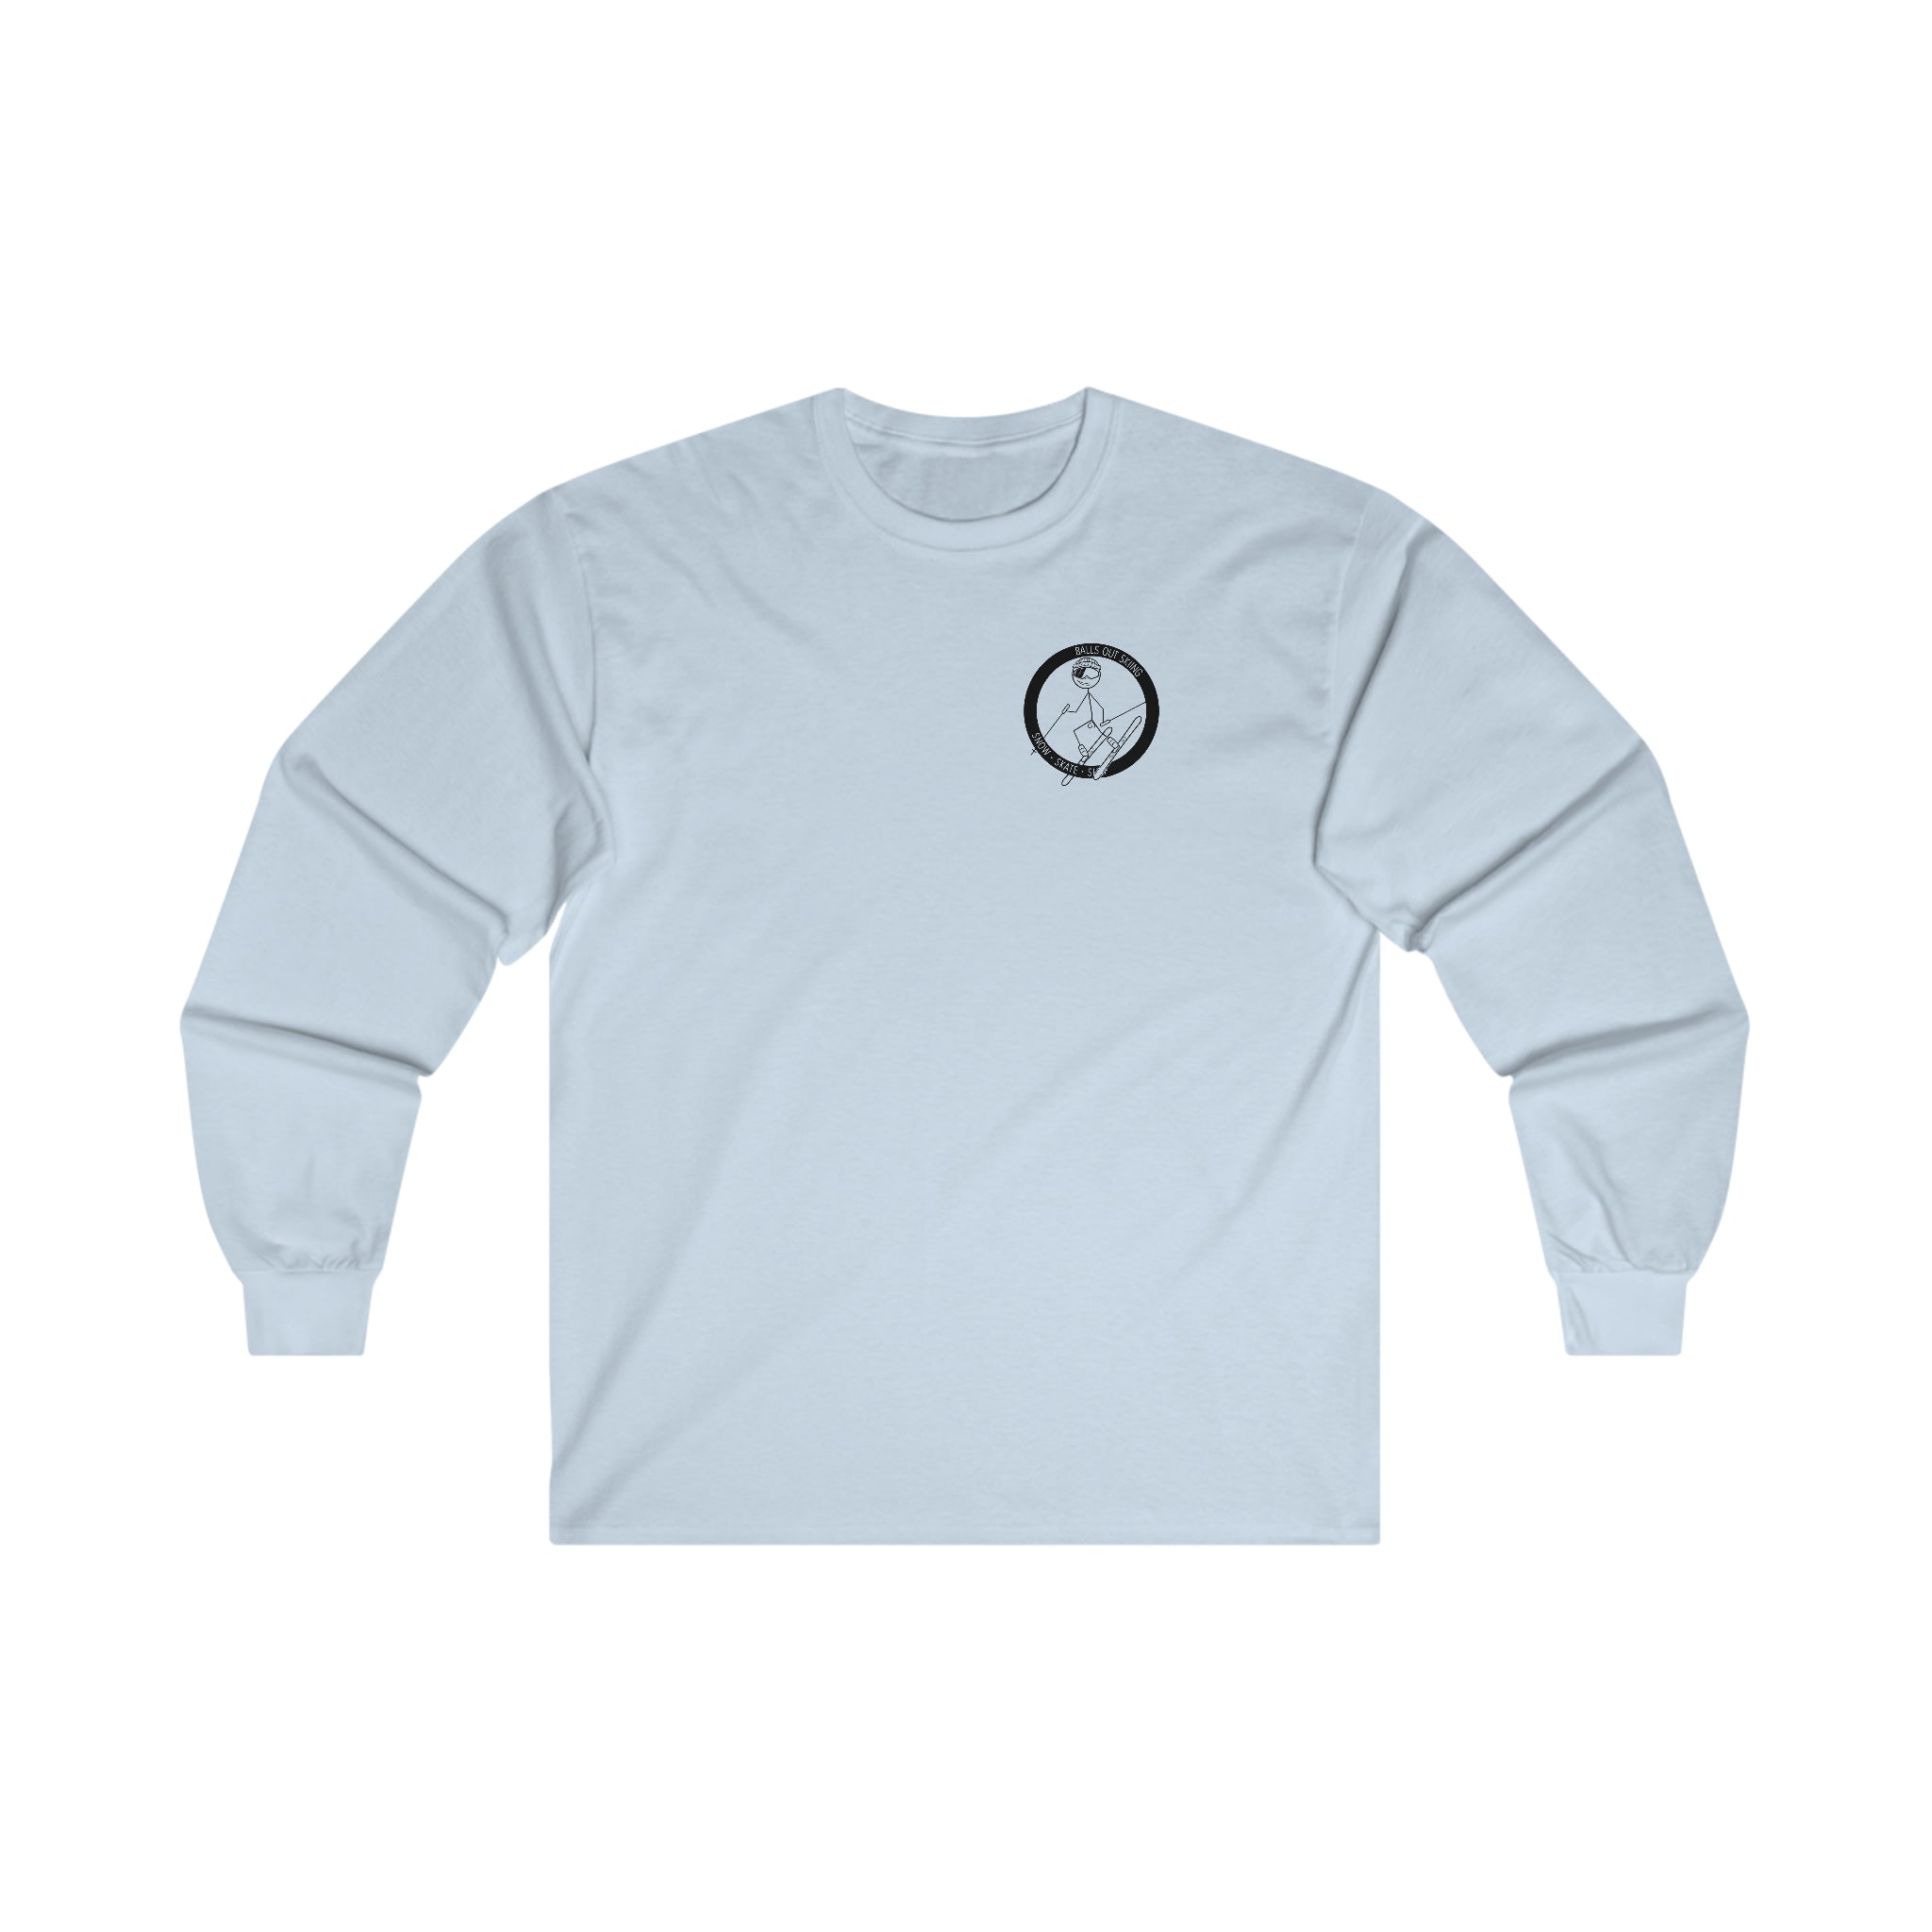 Long Sleeve Floorball Compression Shirt (White) – BLINDSAVE floorball